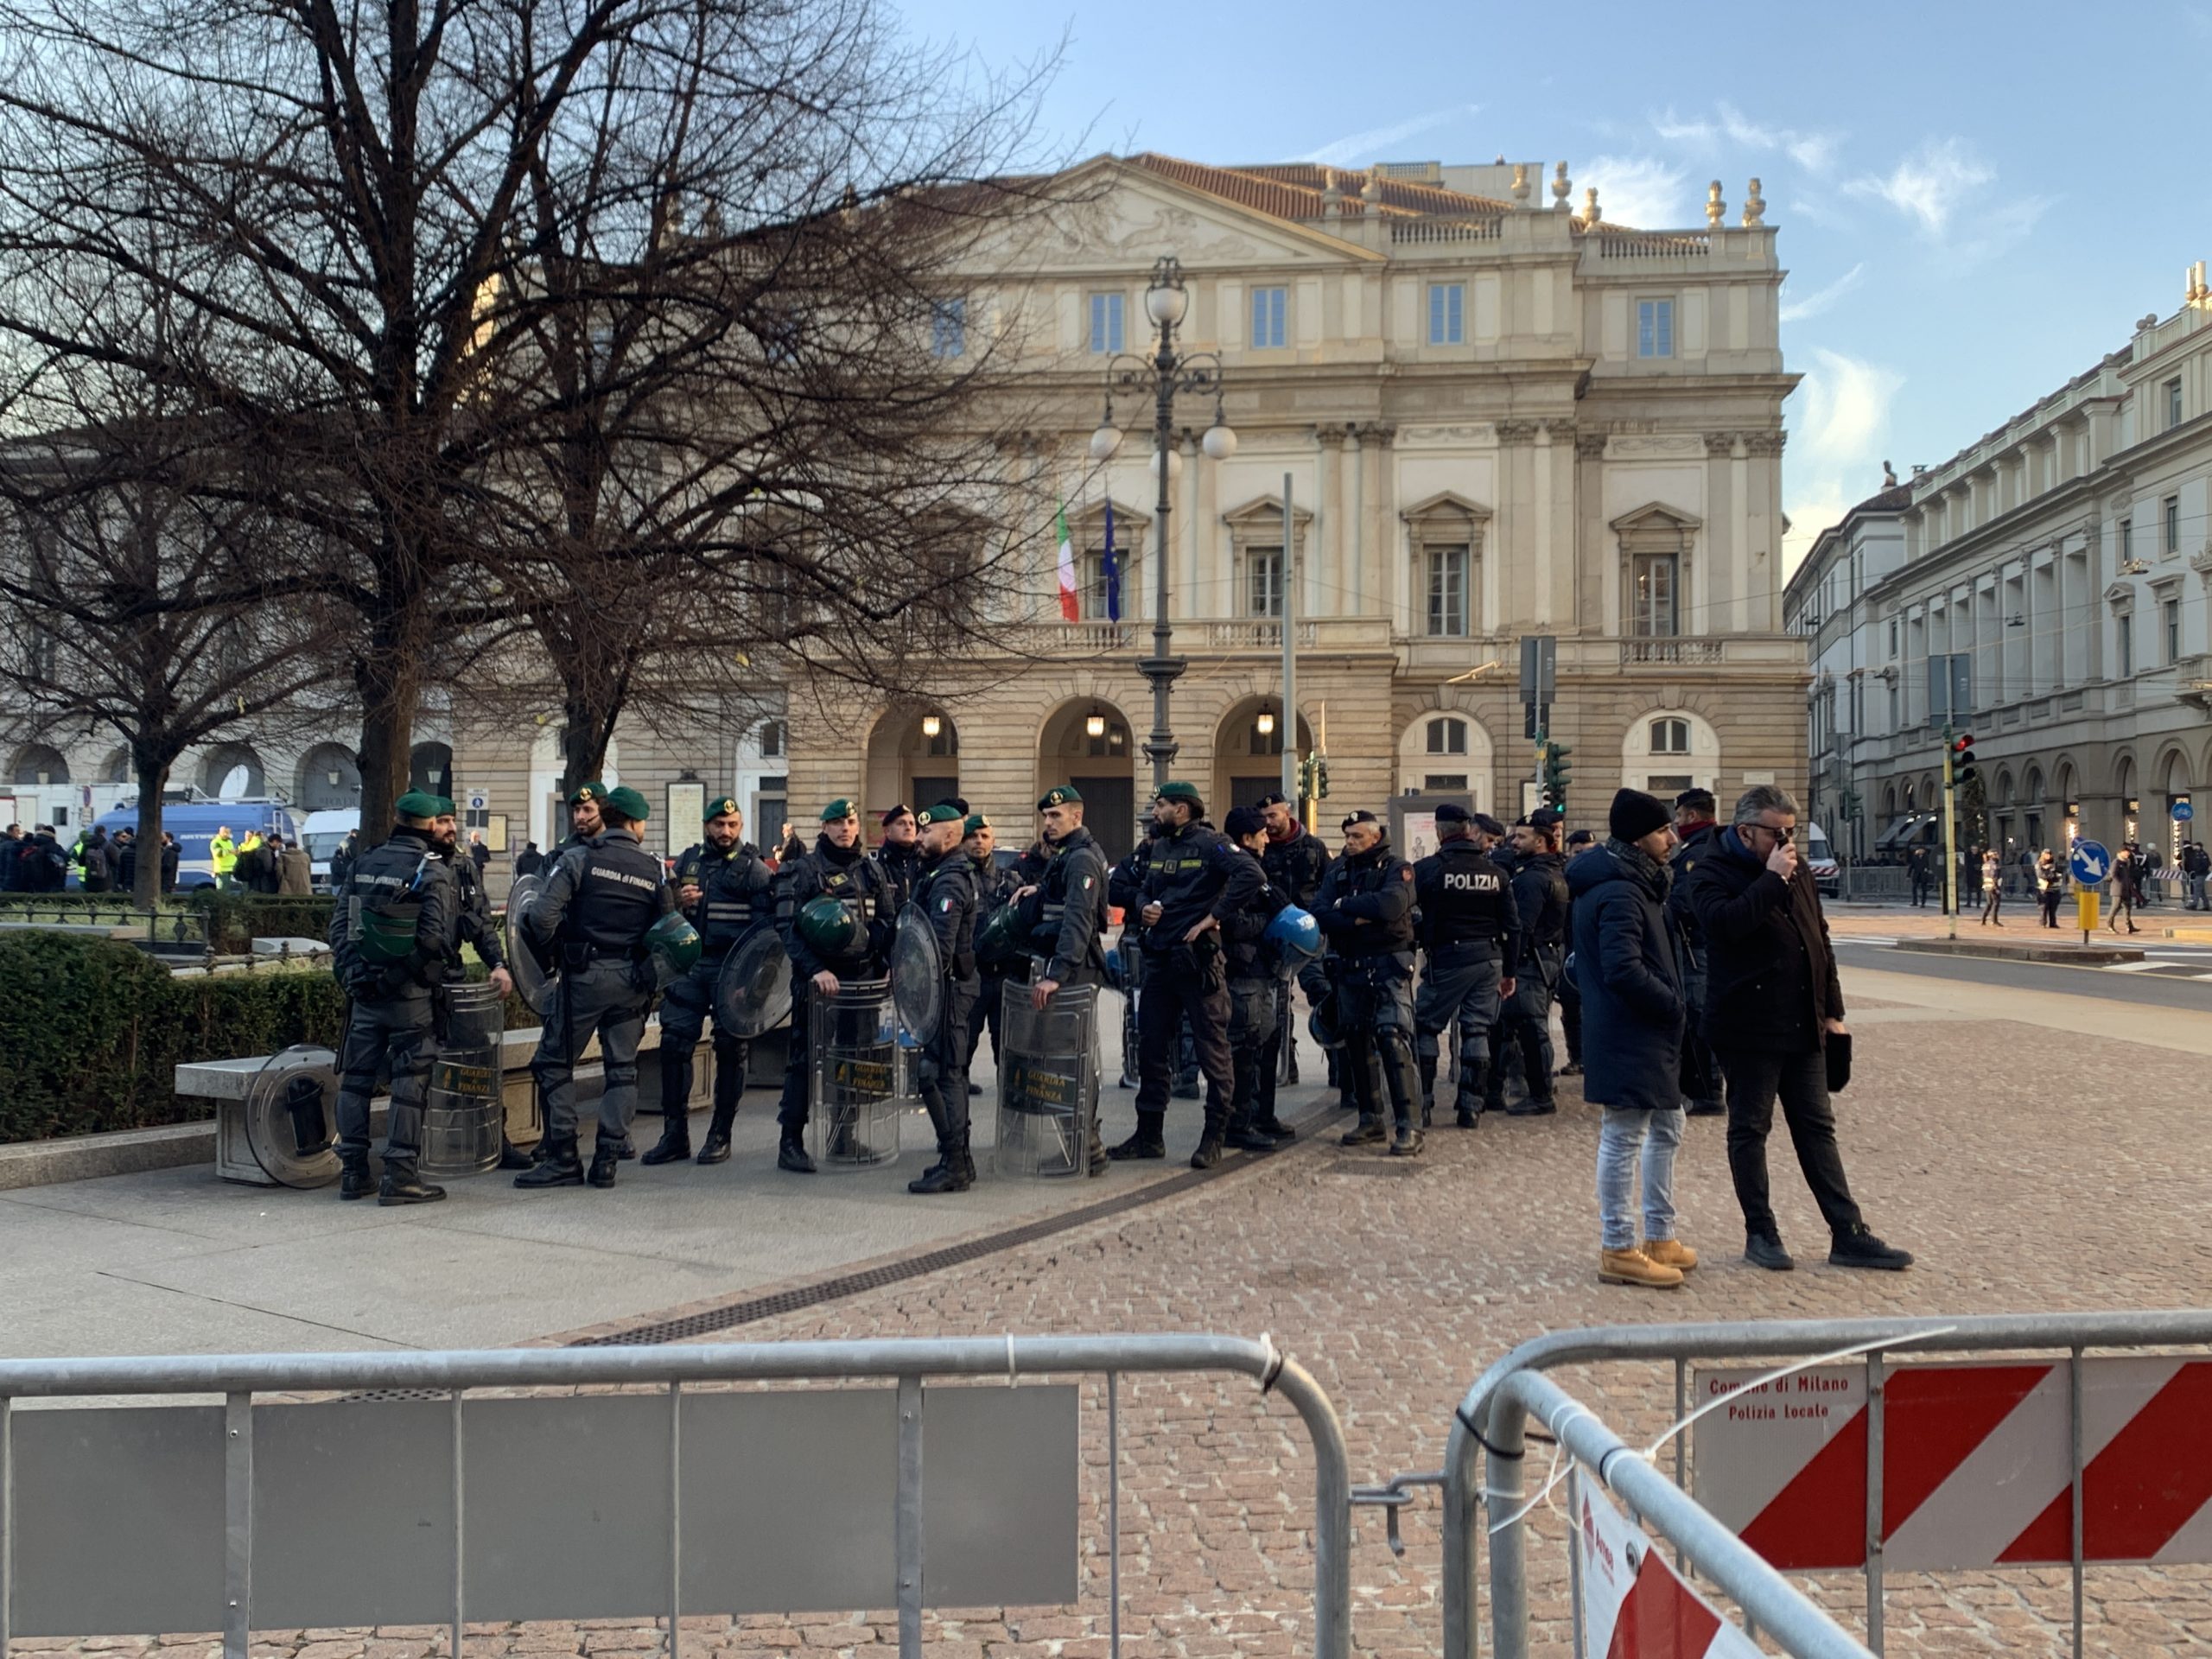 Gli agenti di polizia incaricati della sorveglianza della piazza. Per tutto il pomeriggio non si sono registrate tensioni. Anzi, carabinieri e poliziotti sono apparsi sempre sorridenti e tranquilli.